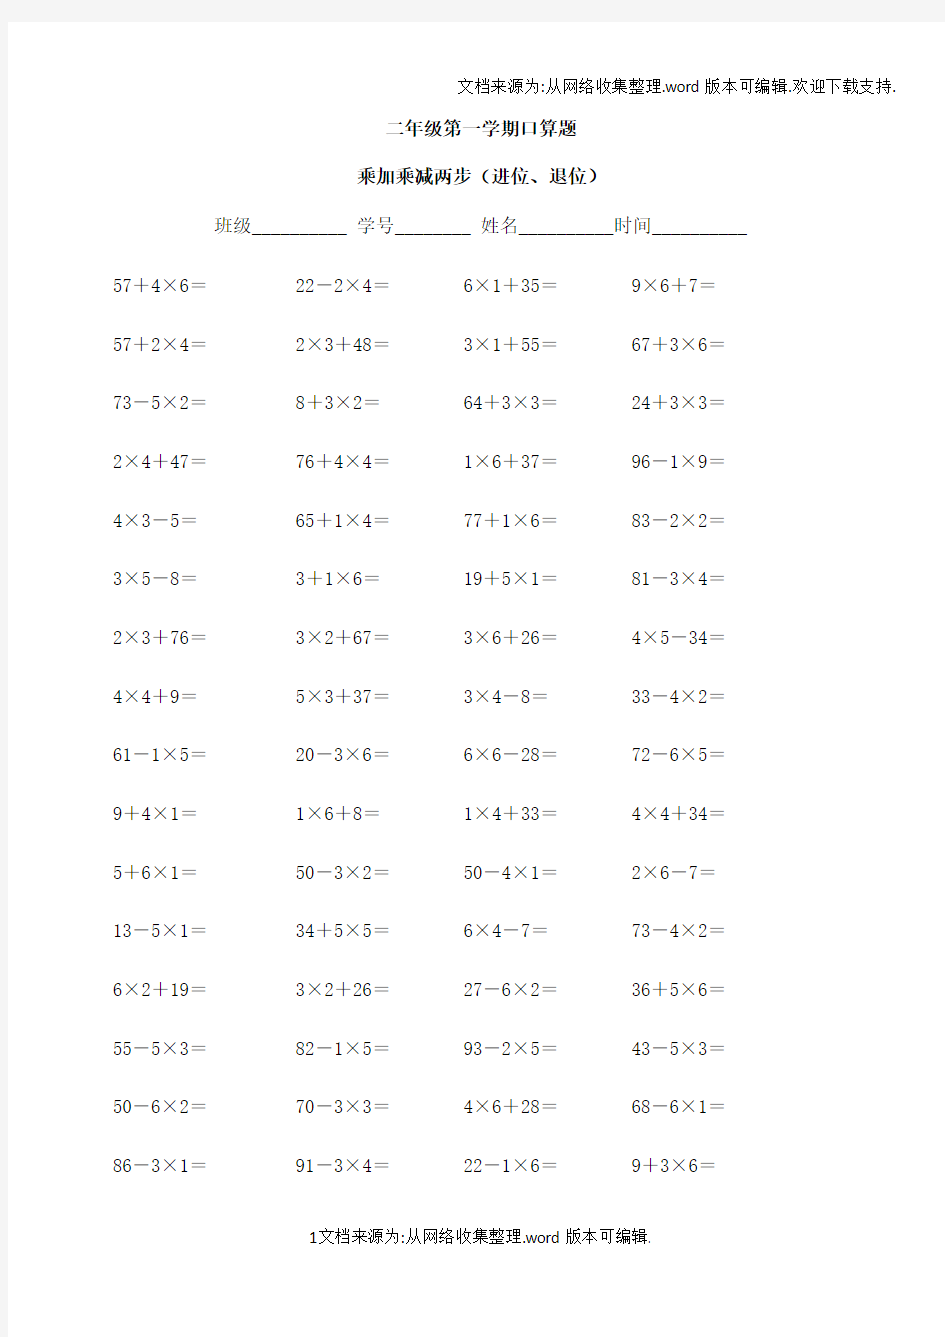 二年级乘加乘减口算100题(供参考)